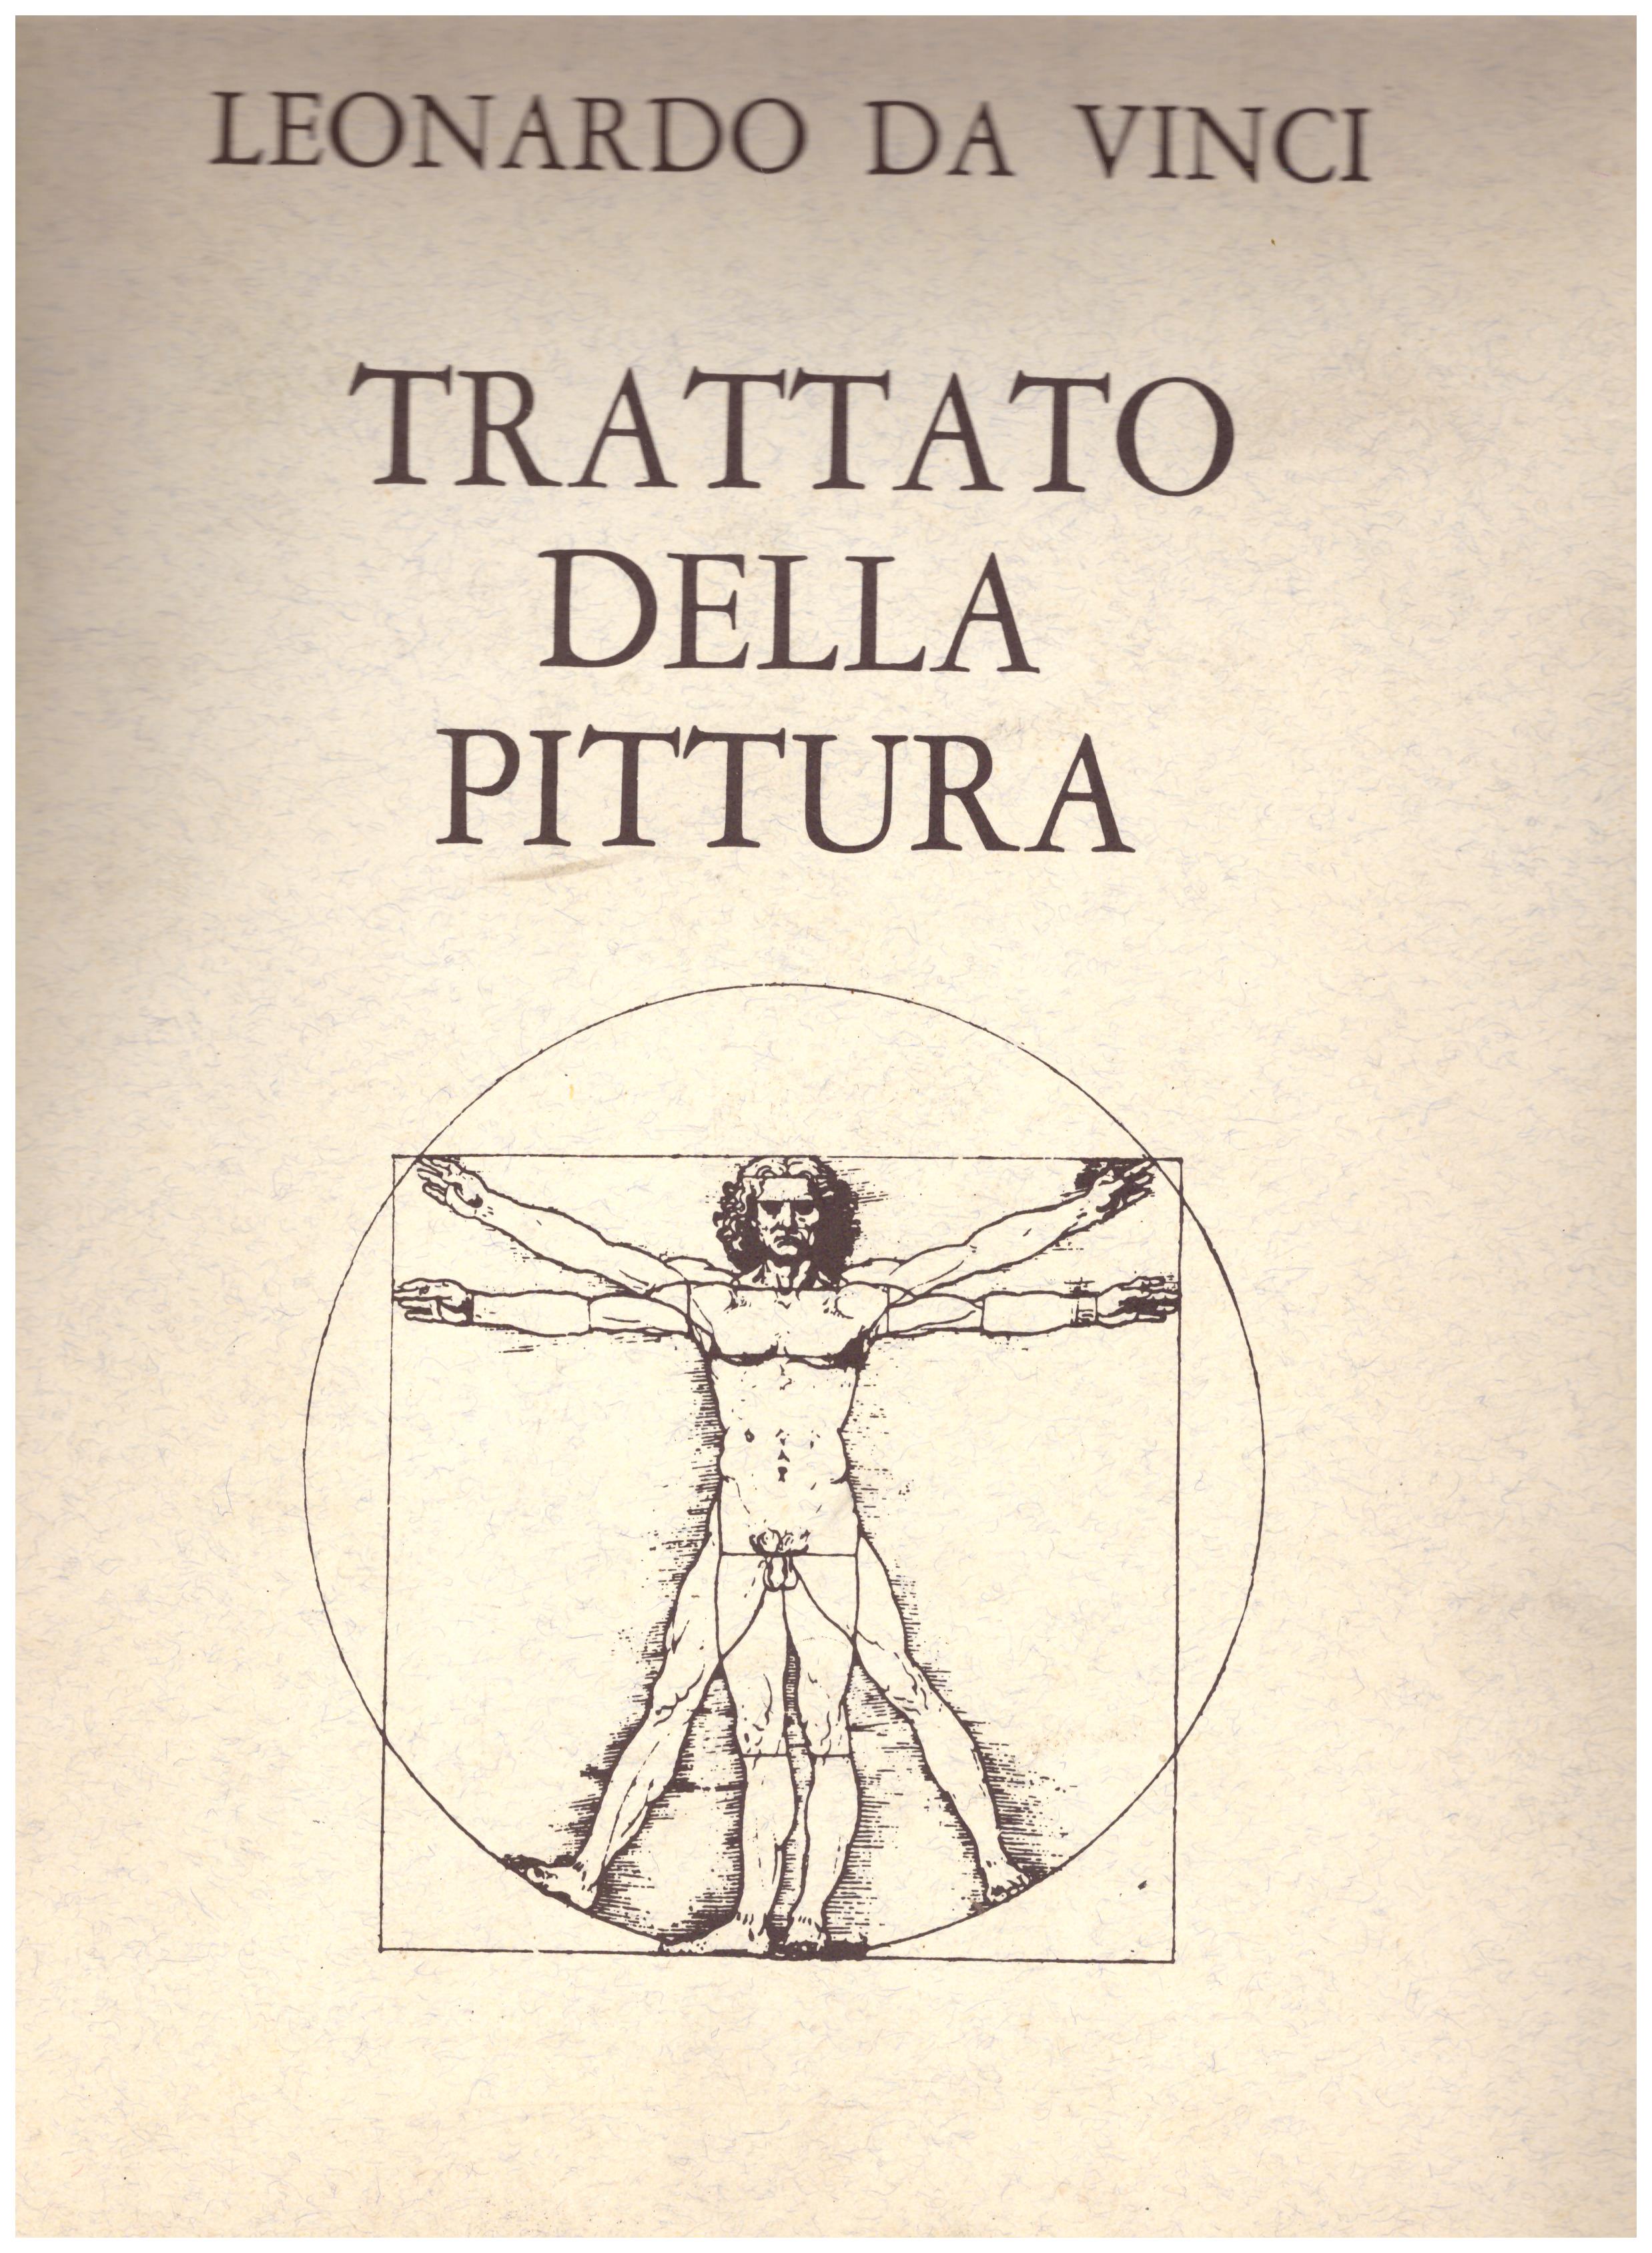 Titolo: Trattato della pittura Leonardo Da Vinci  Autore: Leonardo Da Vinci  Editore: Le bibliophile, 1987